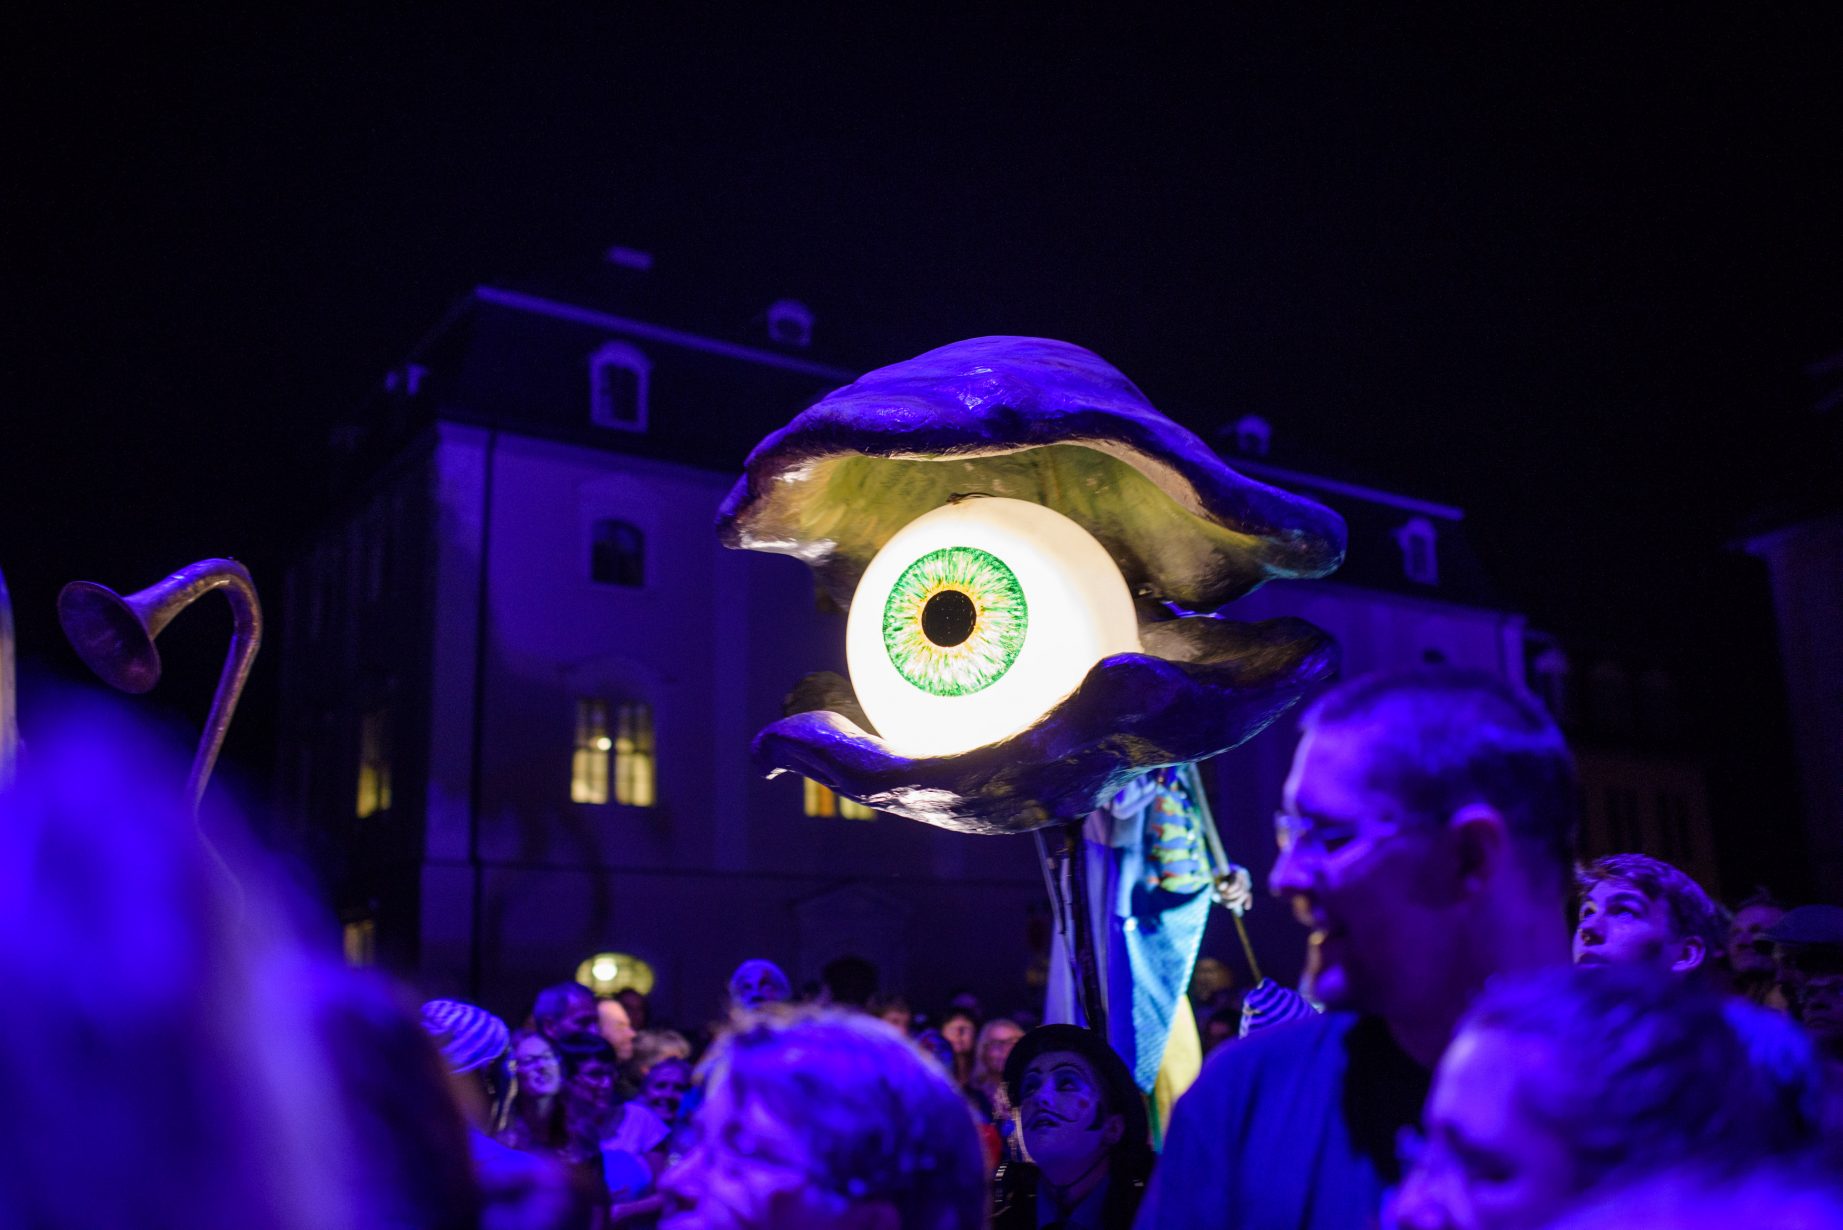 Kunstfest 2019: Auftakt zum Kunstfest Weimar 2018 mit der Aufführung des Staßentheaters "Mù – Cinématique des fluides" der Compagnie Transe Express aus Frankreich. Foto: Candy Welz